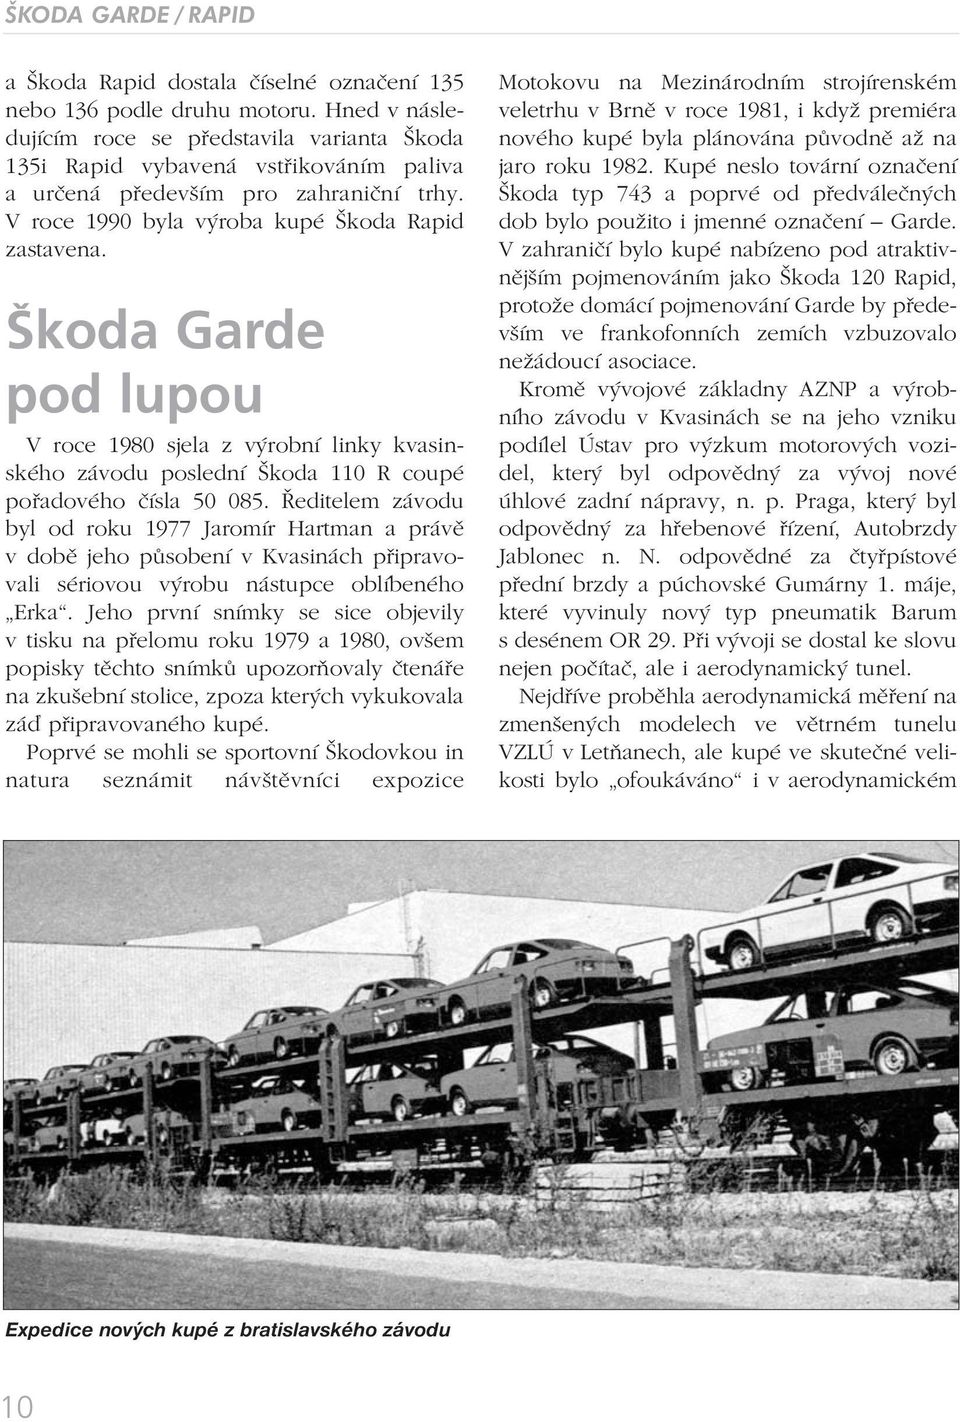 Škoda Garde pod lupou V roce 1980 sjela z výrobní linky kvasinského závodu poslední Škoda 110 R coupé pořadového čísla 50 085.